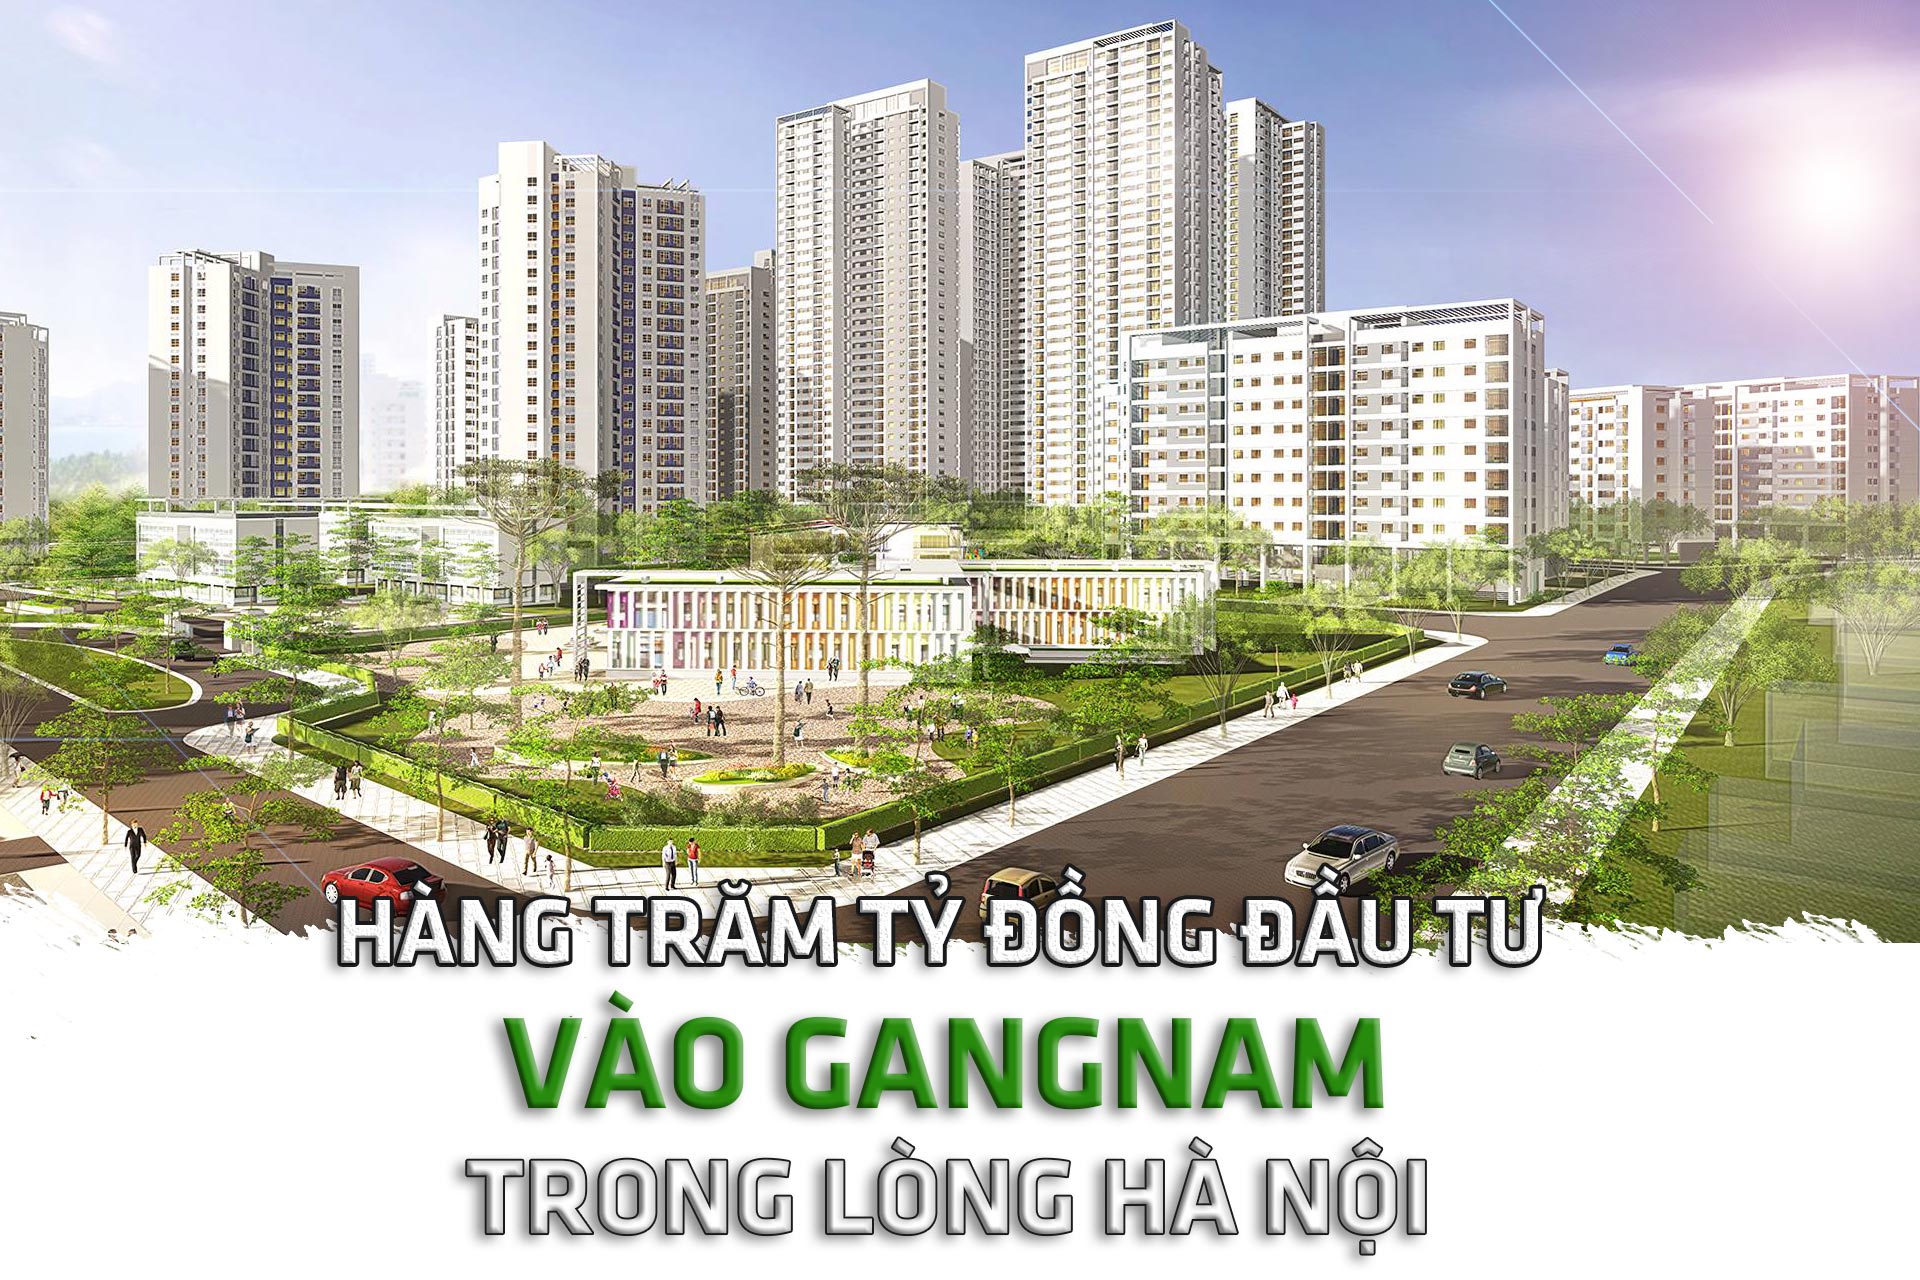 Hàng trăm tỷ đồng đầu tư vào Gangnam trong lòng Hà Nội - 1